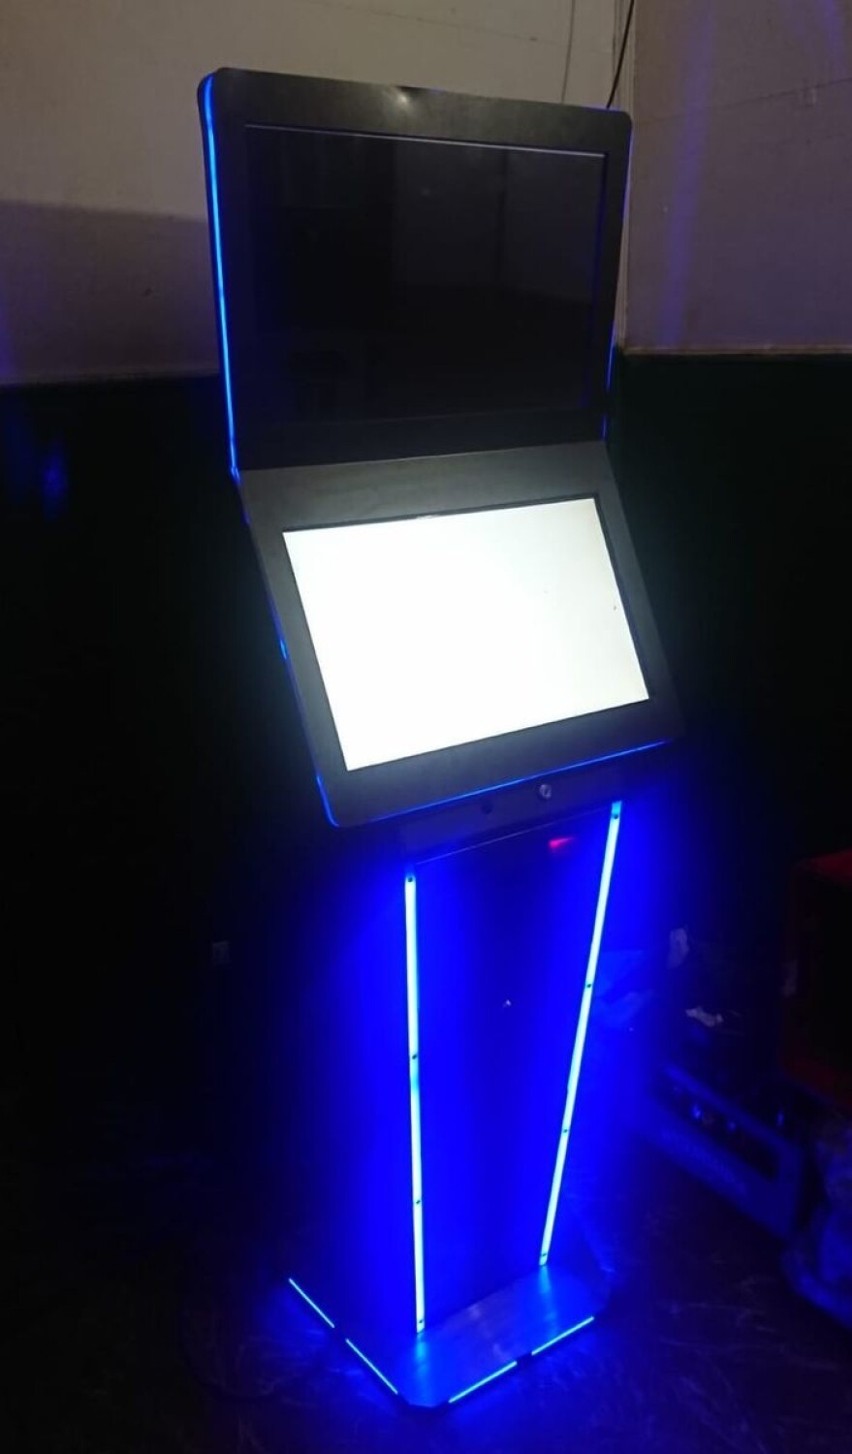 Policja zabezpieczyła nielegalny automat do gier hazardowych w gminie Wiązownica